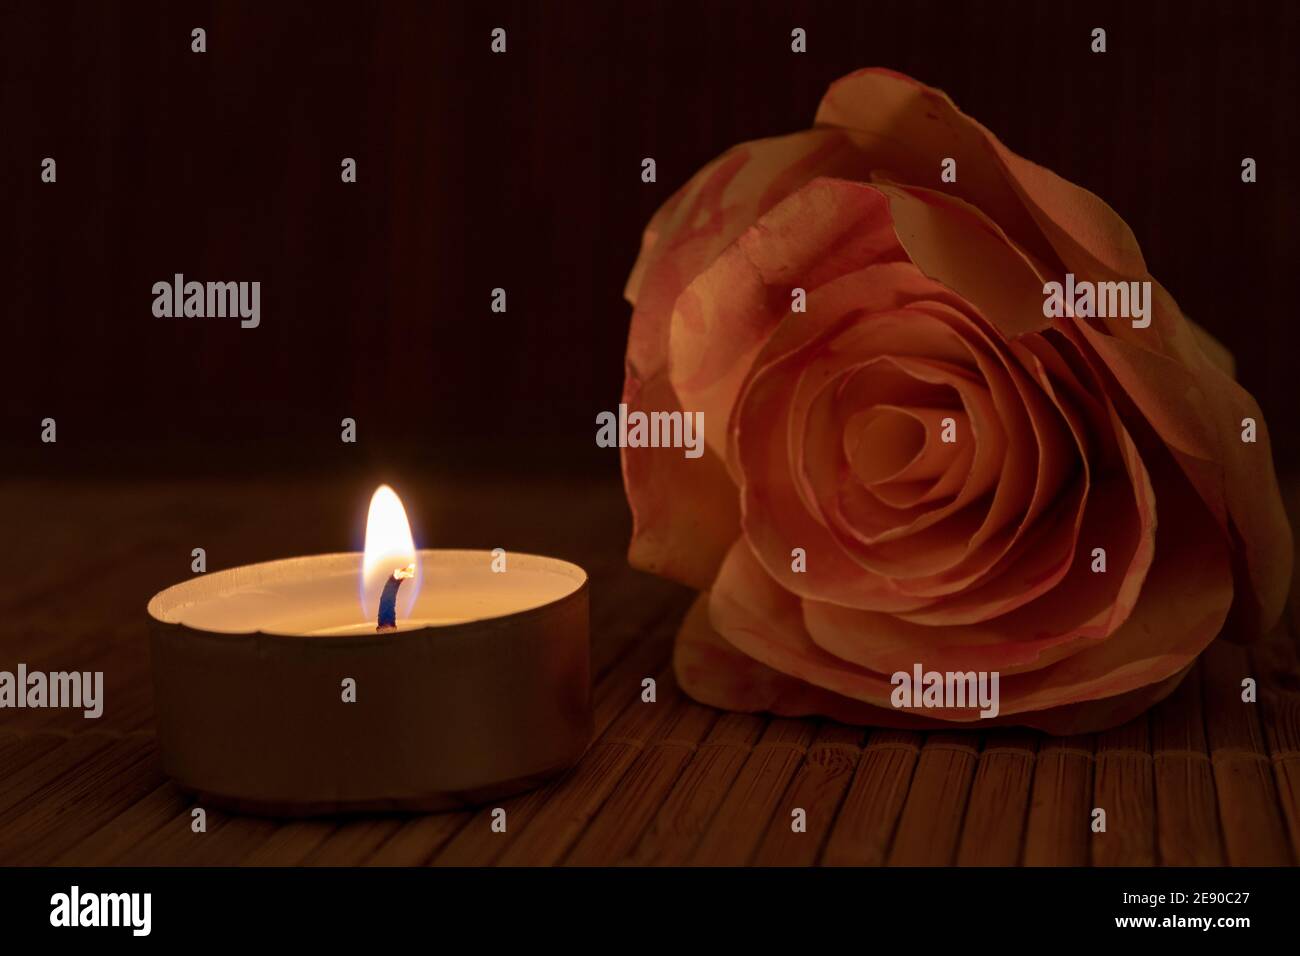 rosa rossa e candela bruciante sul tavolo con sfondo nero per la copia spazio. Bel concetto di romanticismo, amore, speranza, San Valentino Foto Stock